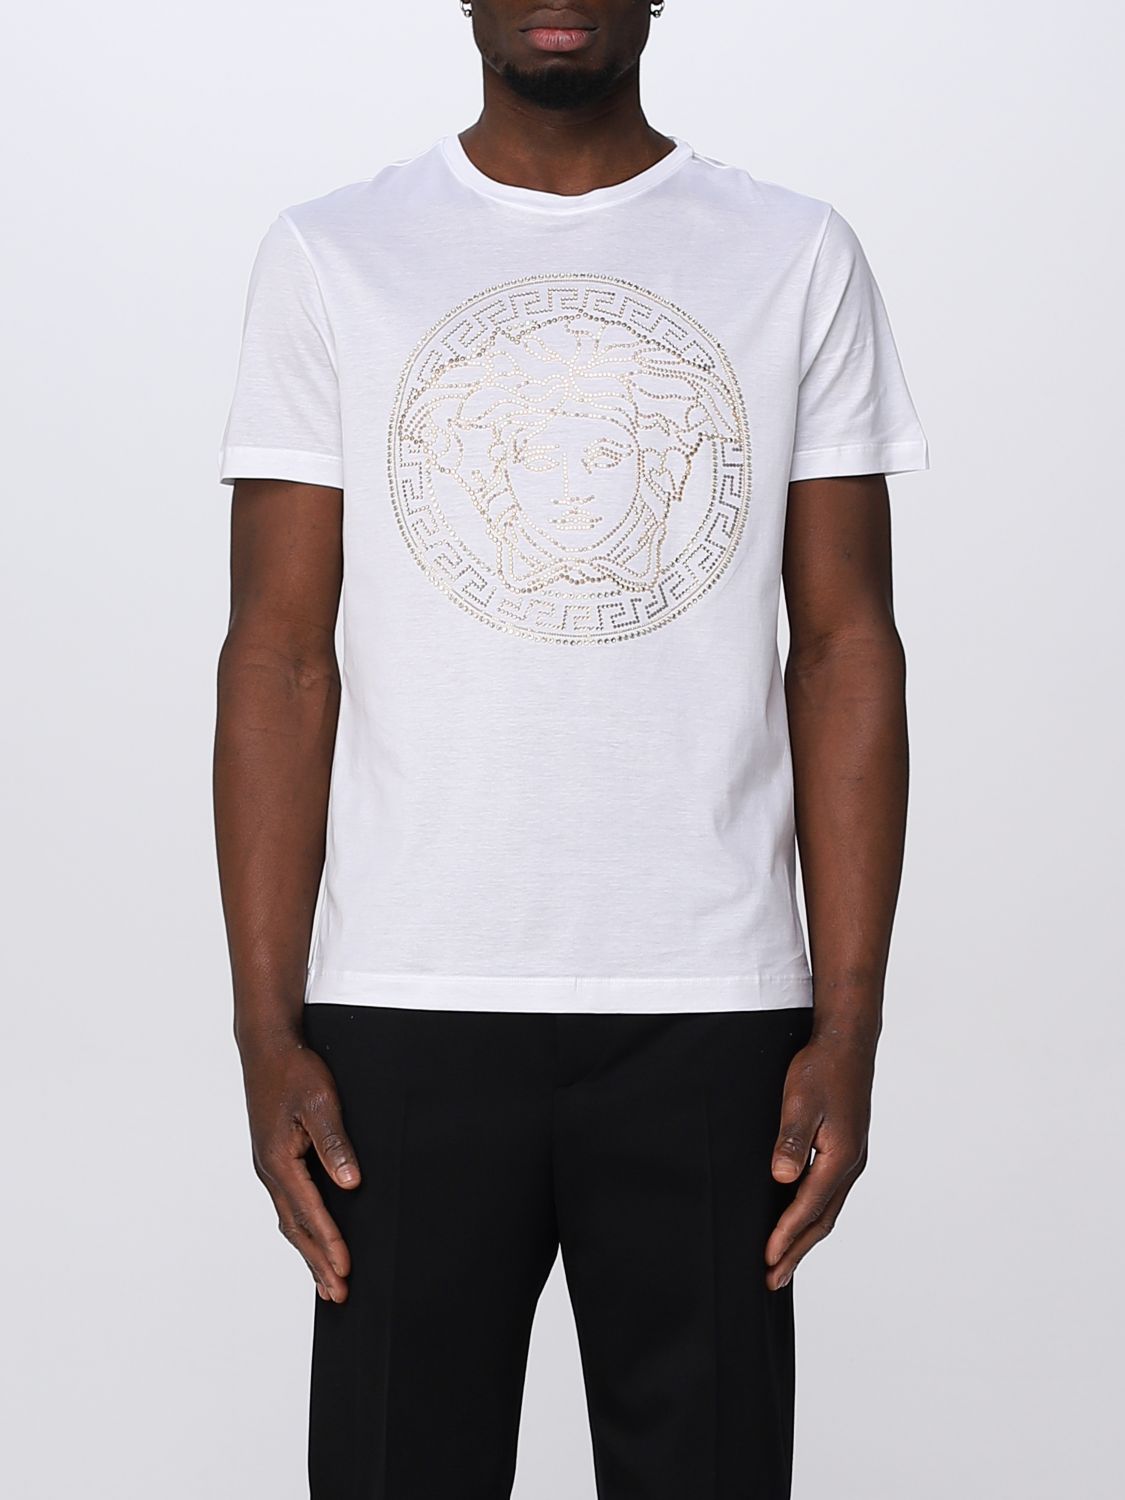 Versace Medusa Motif Studded T-shirt In White | ModeSens